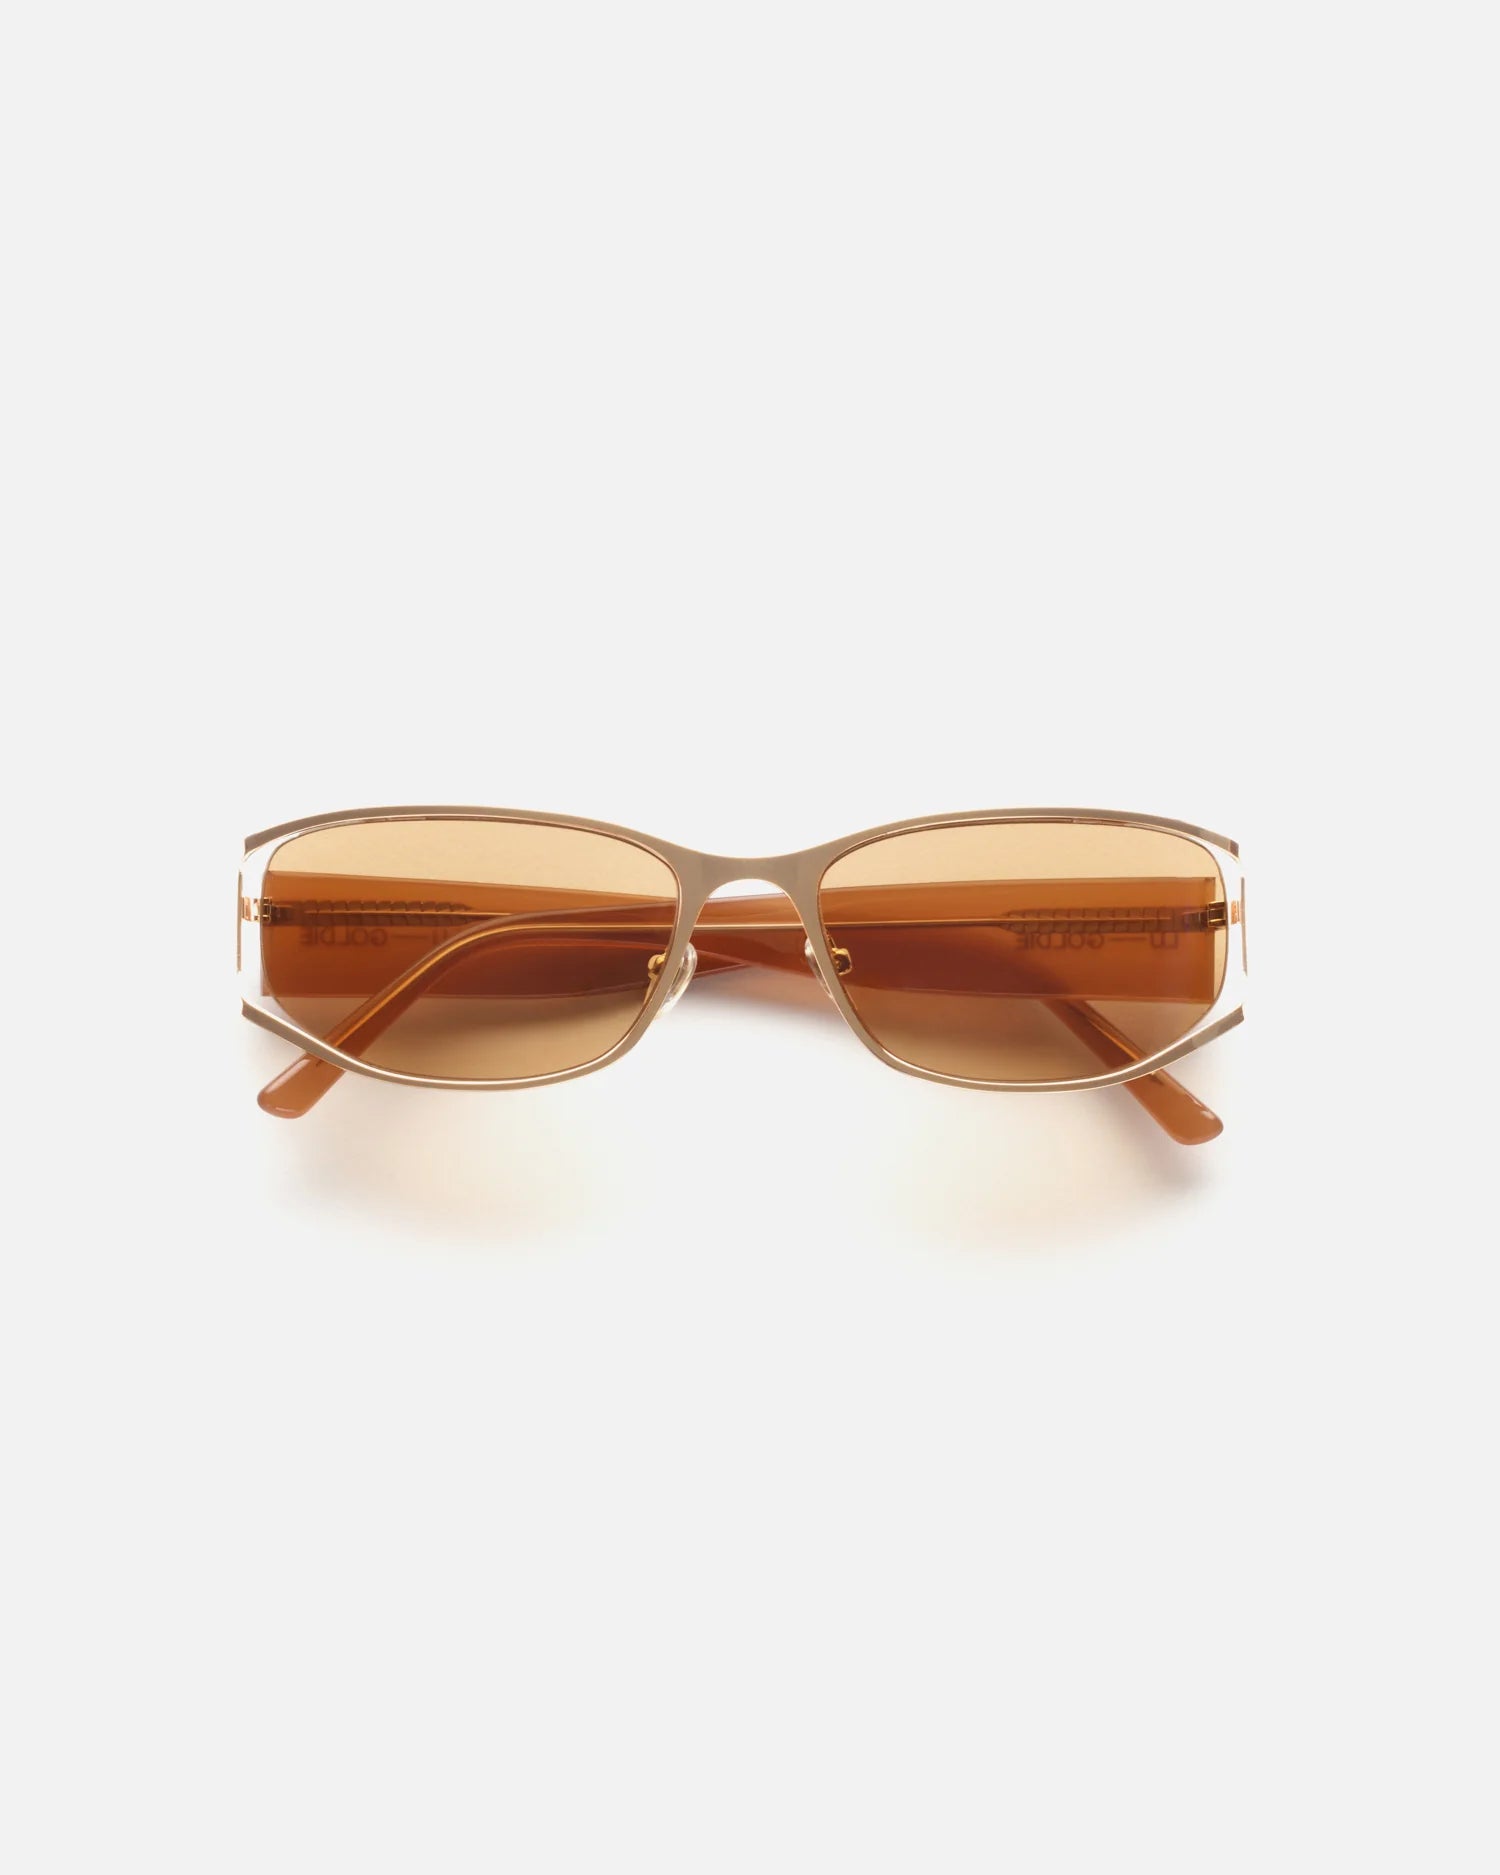 The Iris Sunglasses in Cocoa